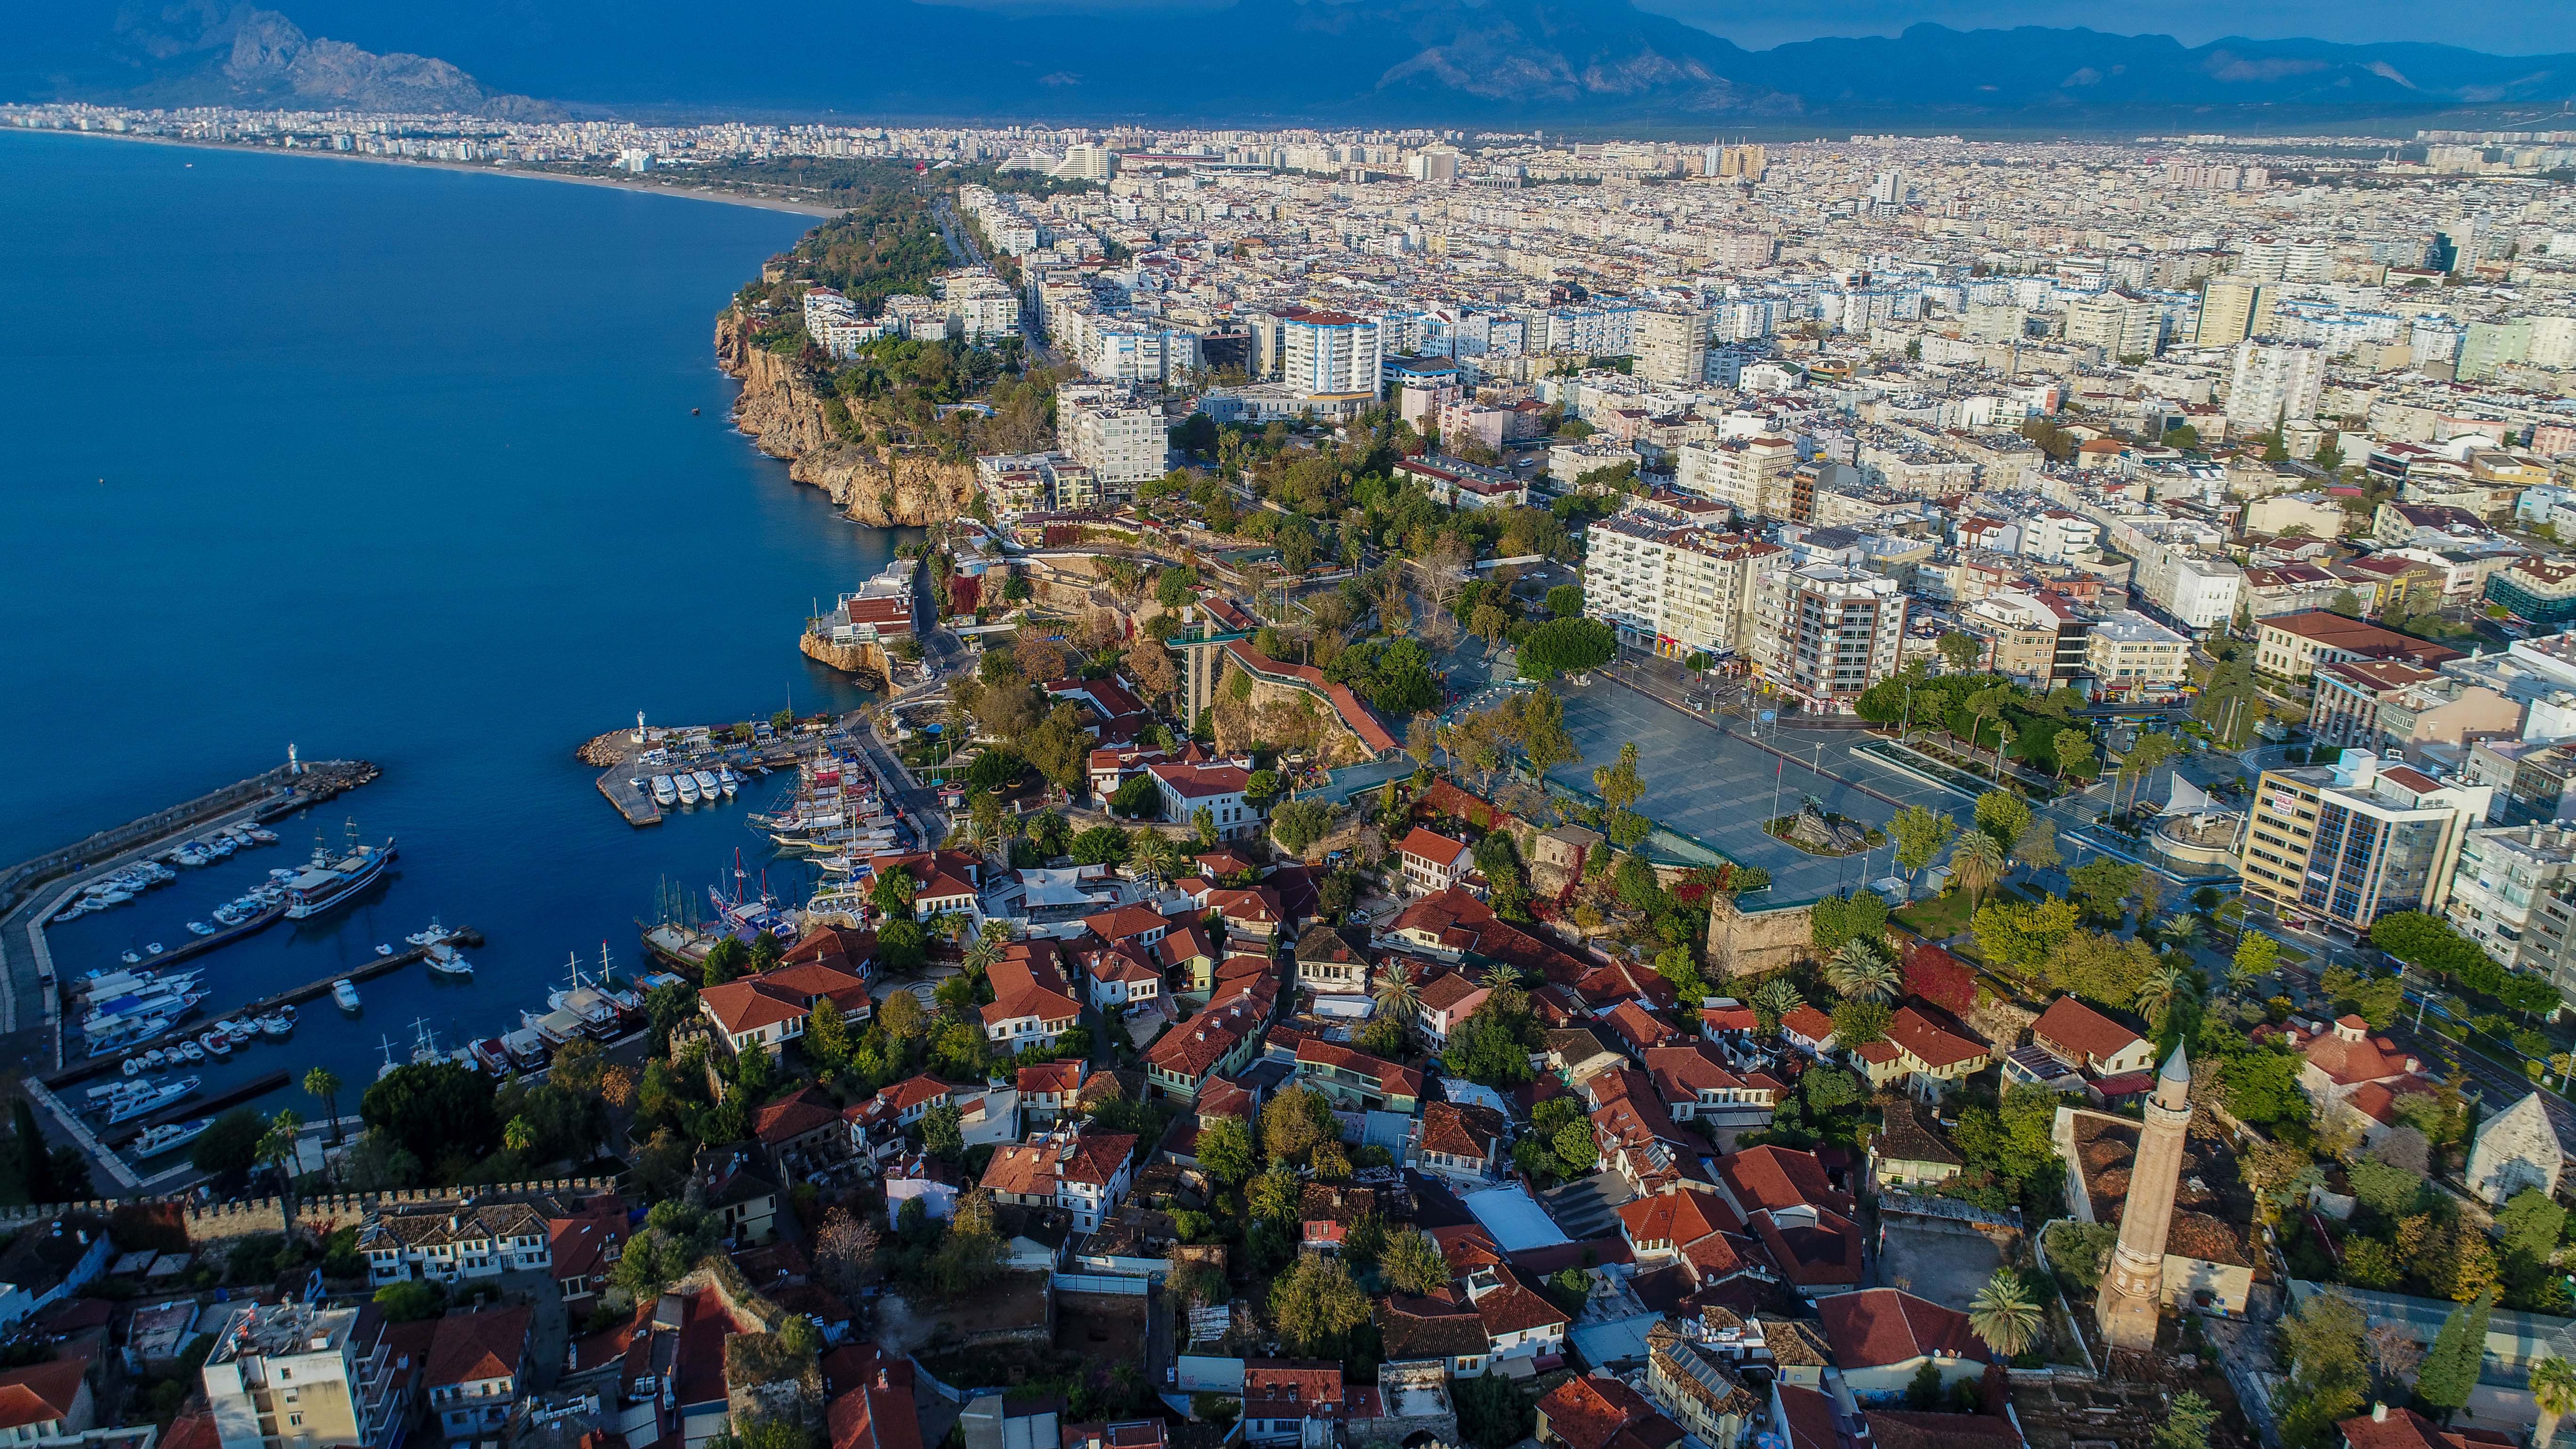 Yabancılara konut satışında İstanbul, Antalya'yı geçti